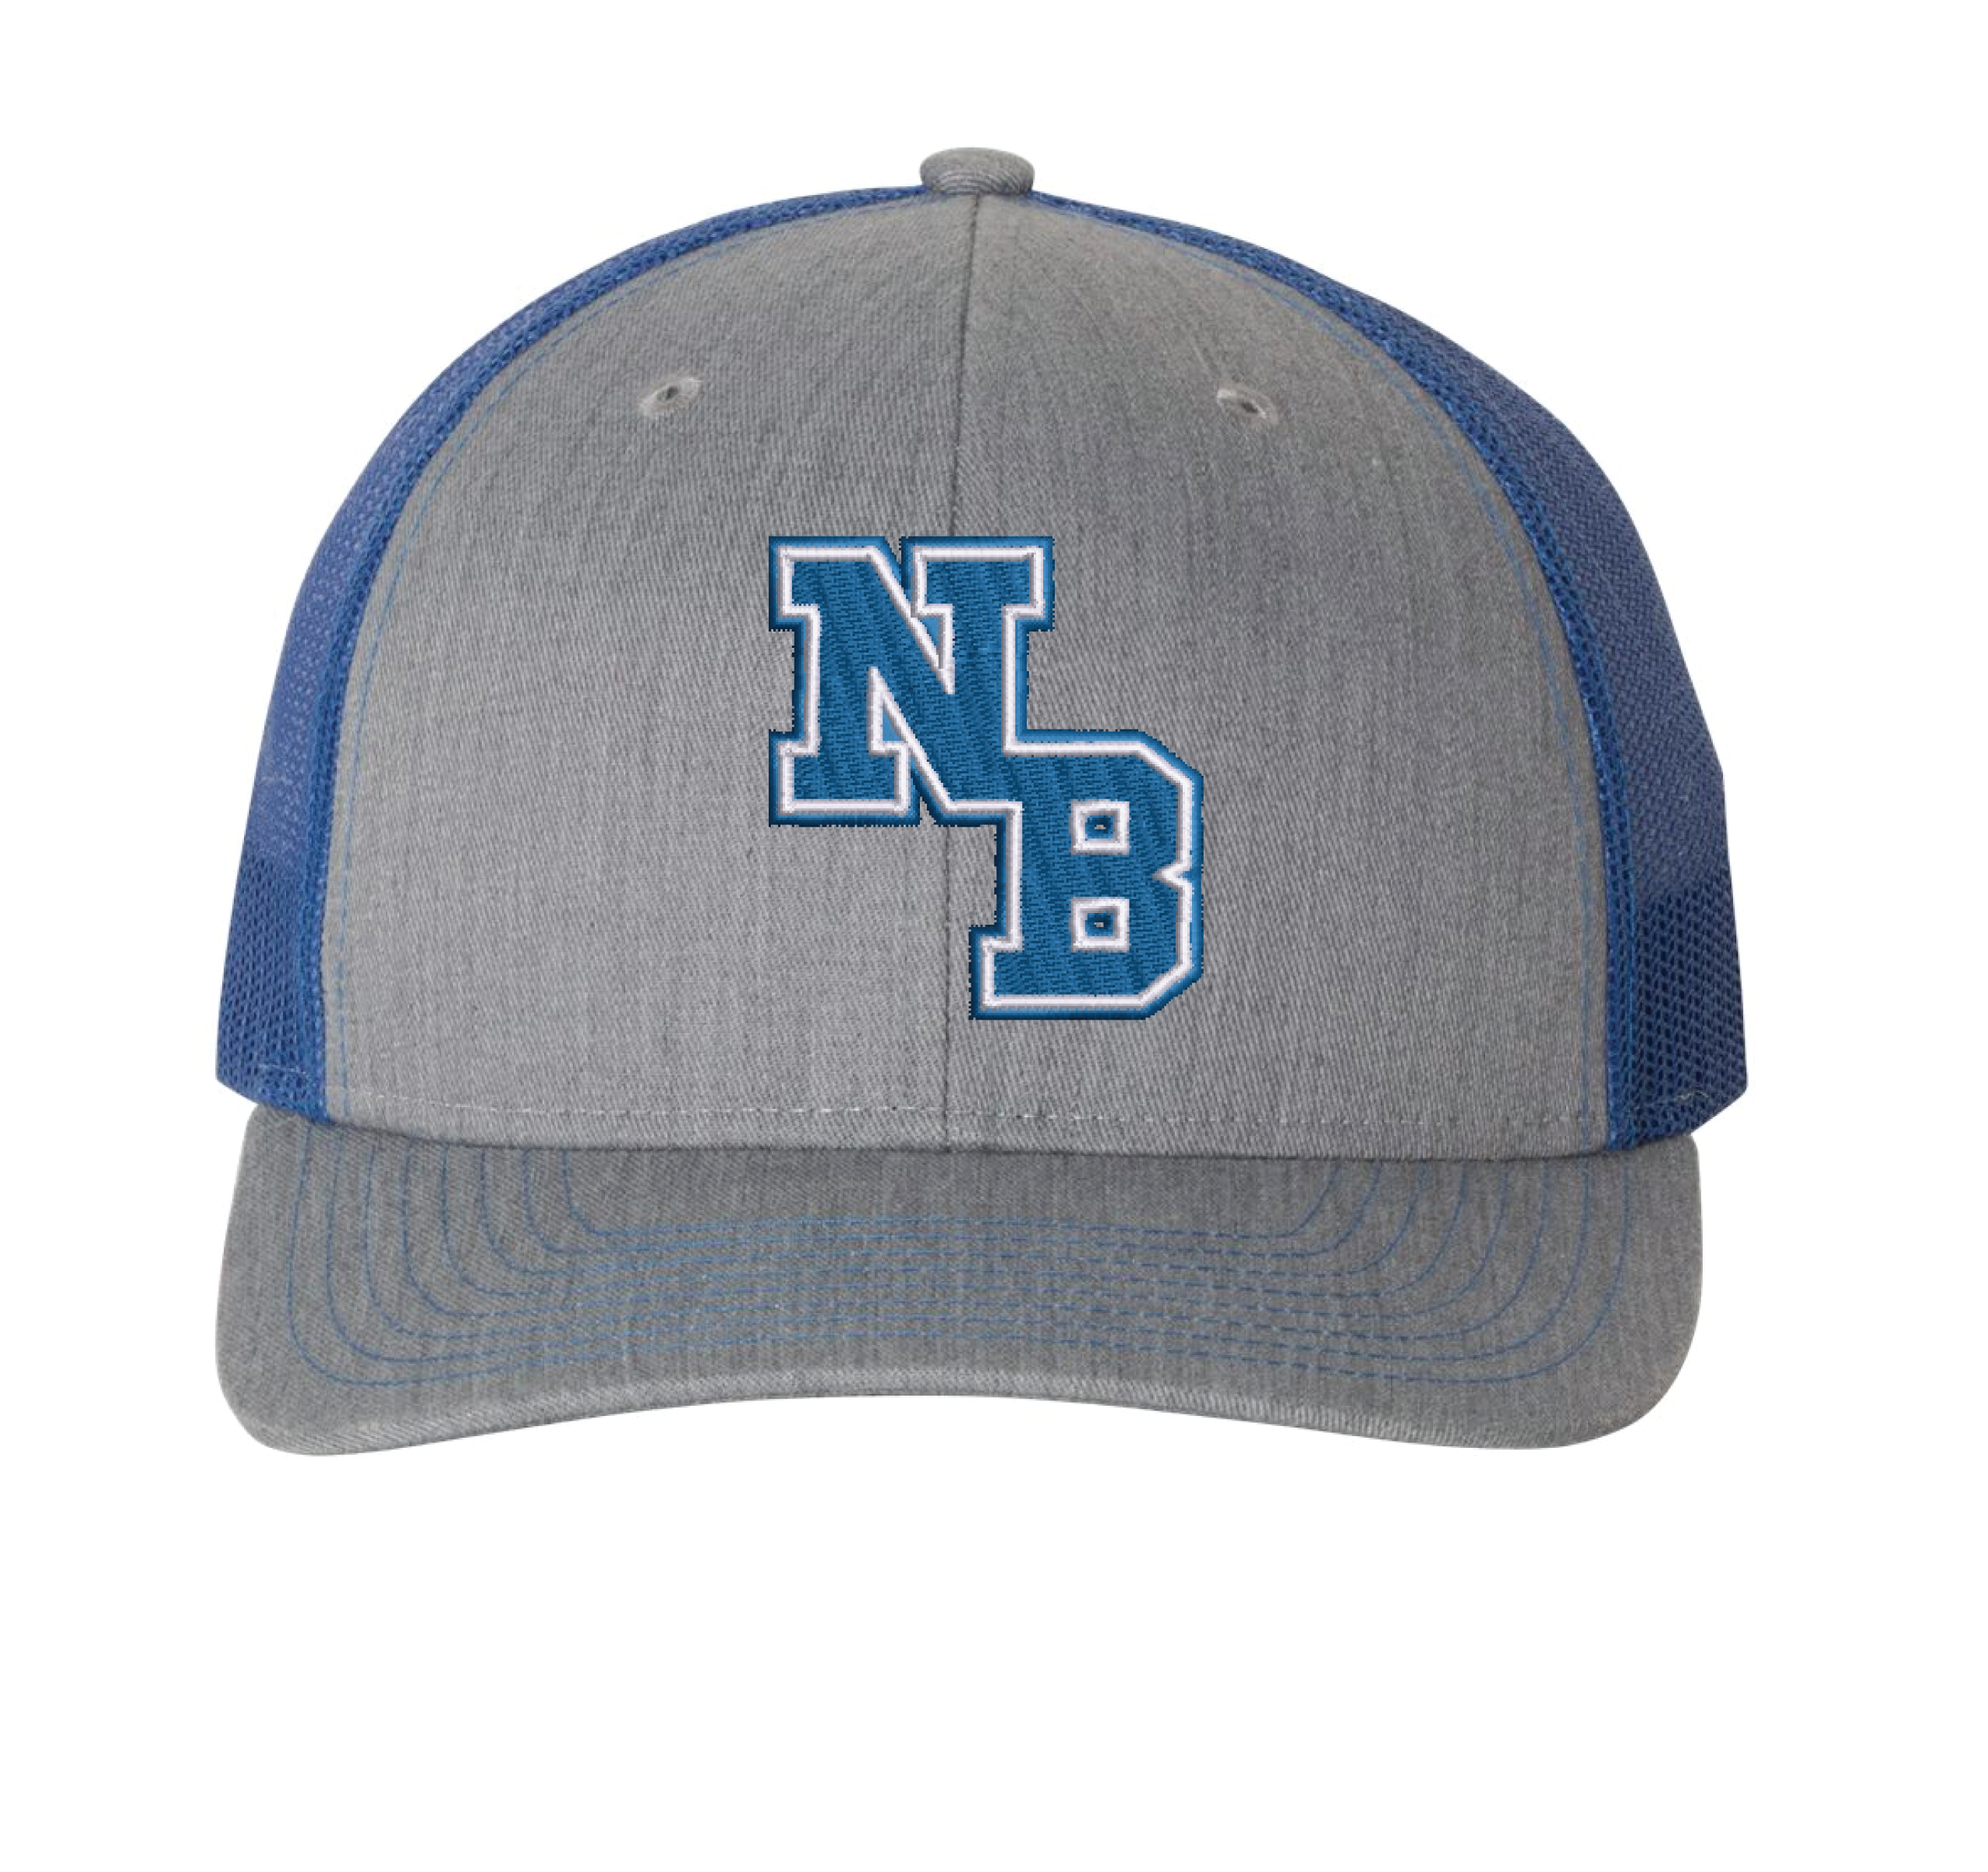 NB Logo Trucker Hat